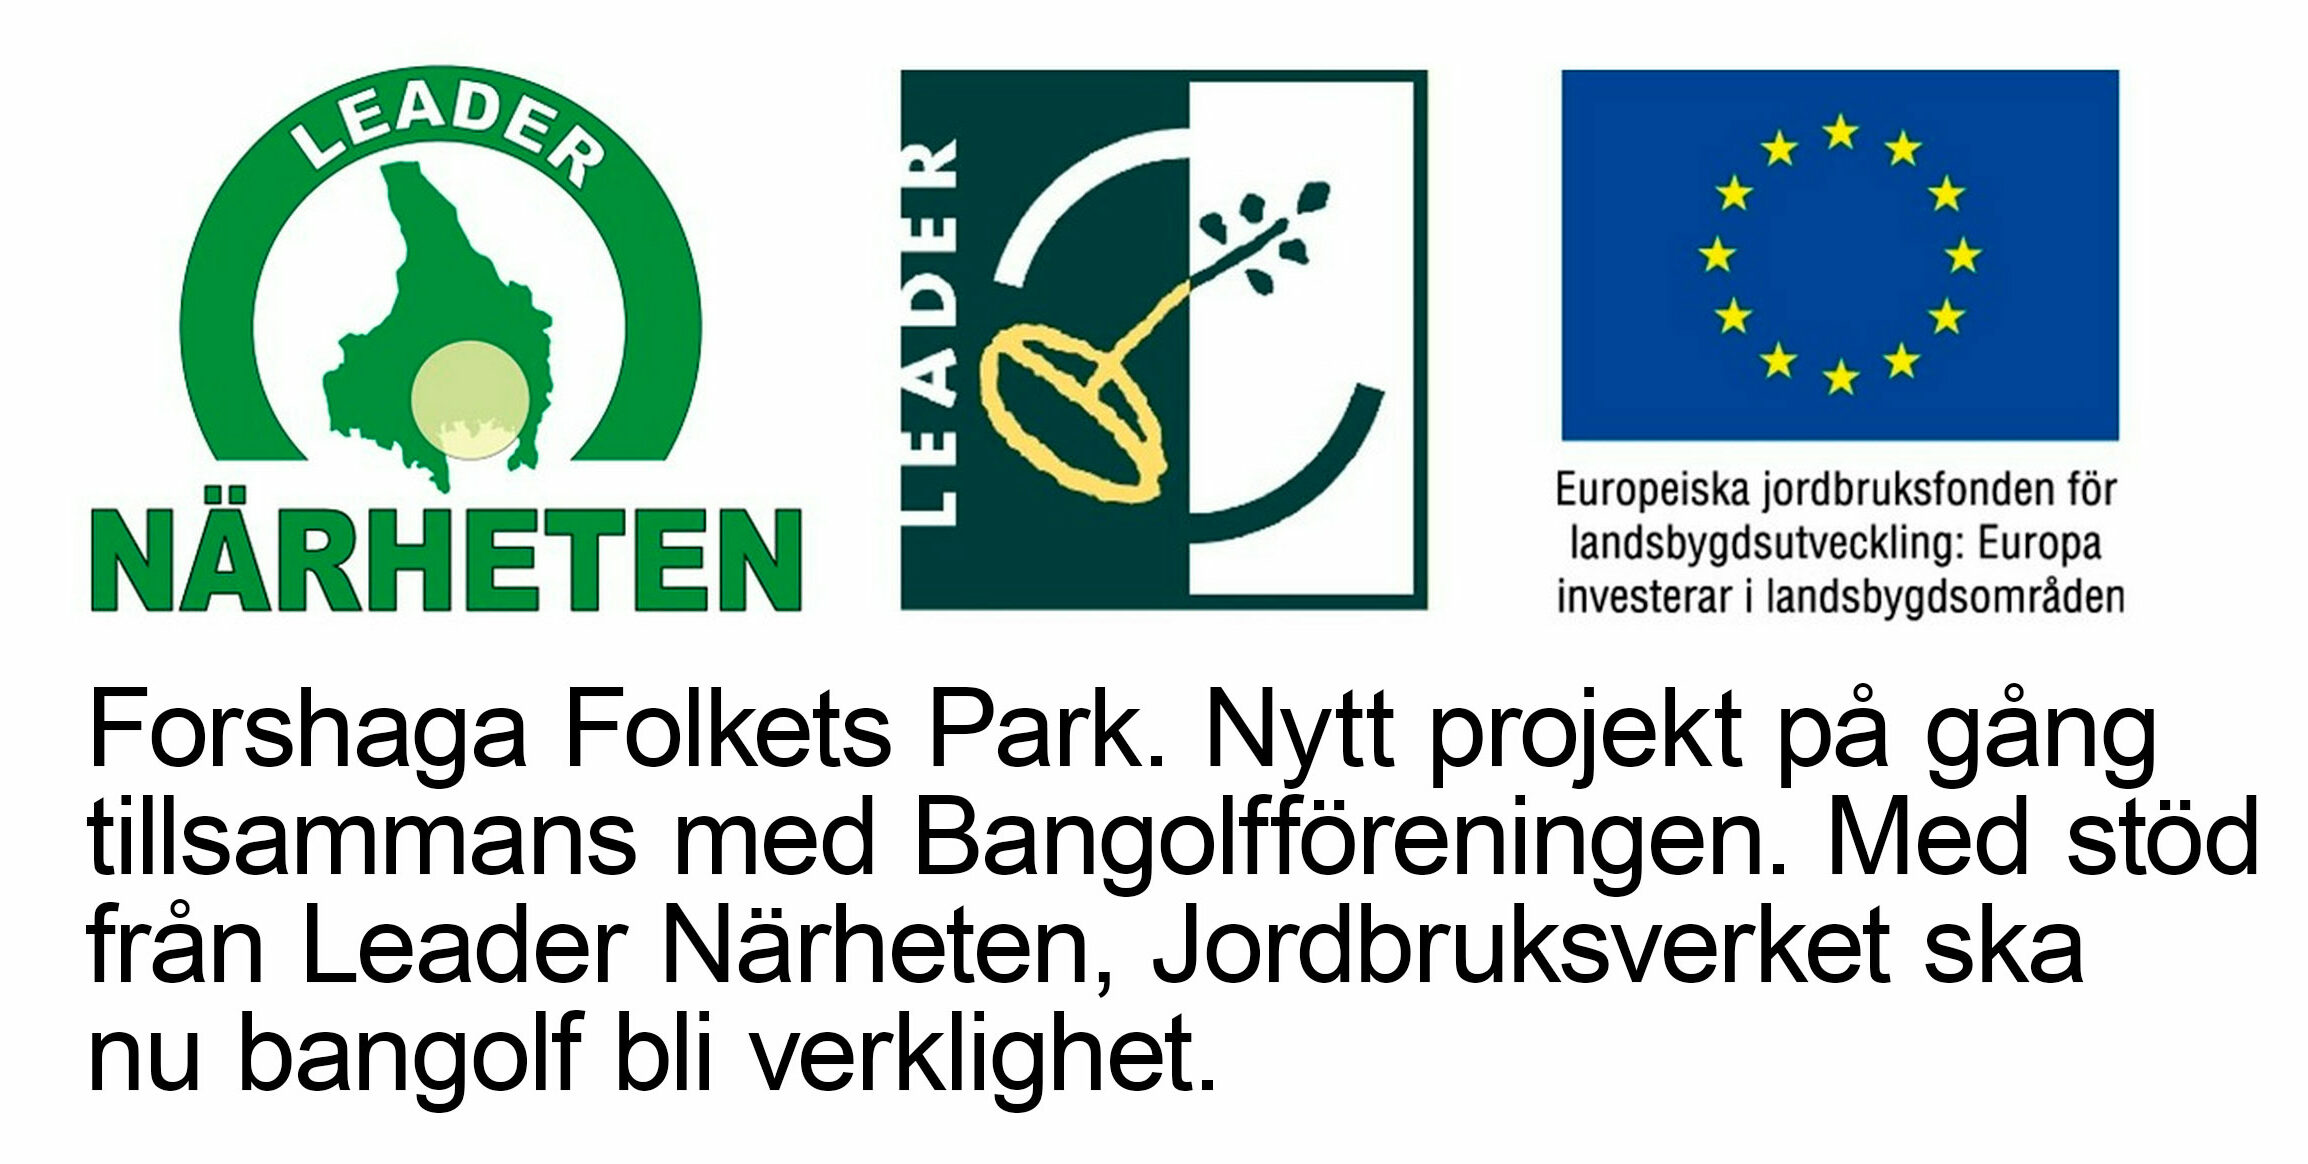 Leader Närheten och Jordbruksverket i samarbete med Forshaga Folkets Park och Bangolfföreningen.